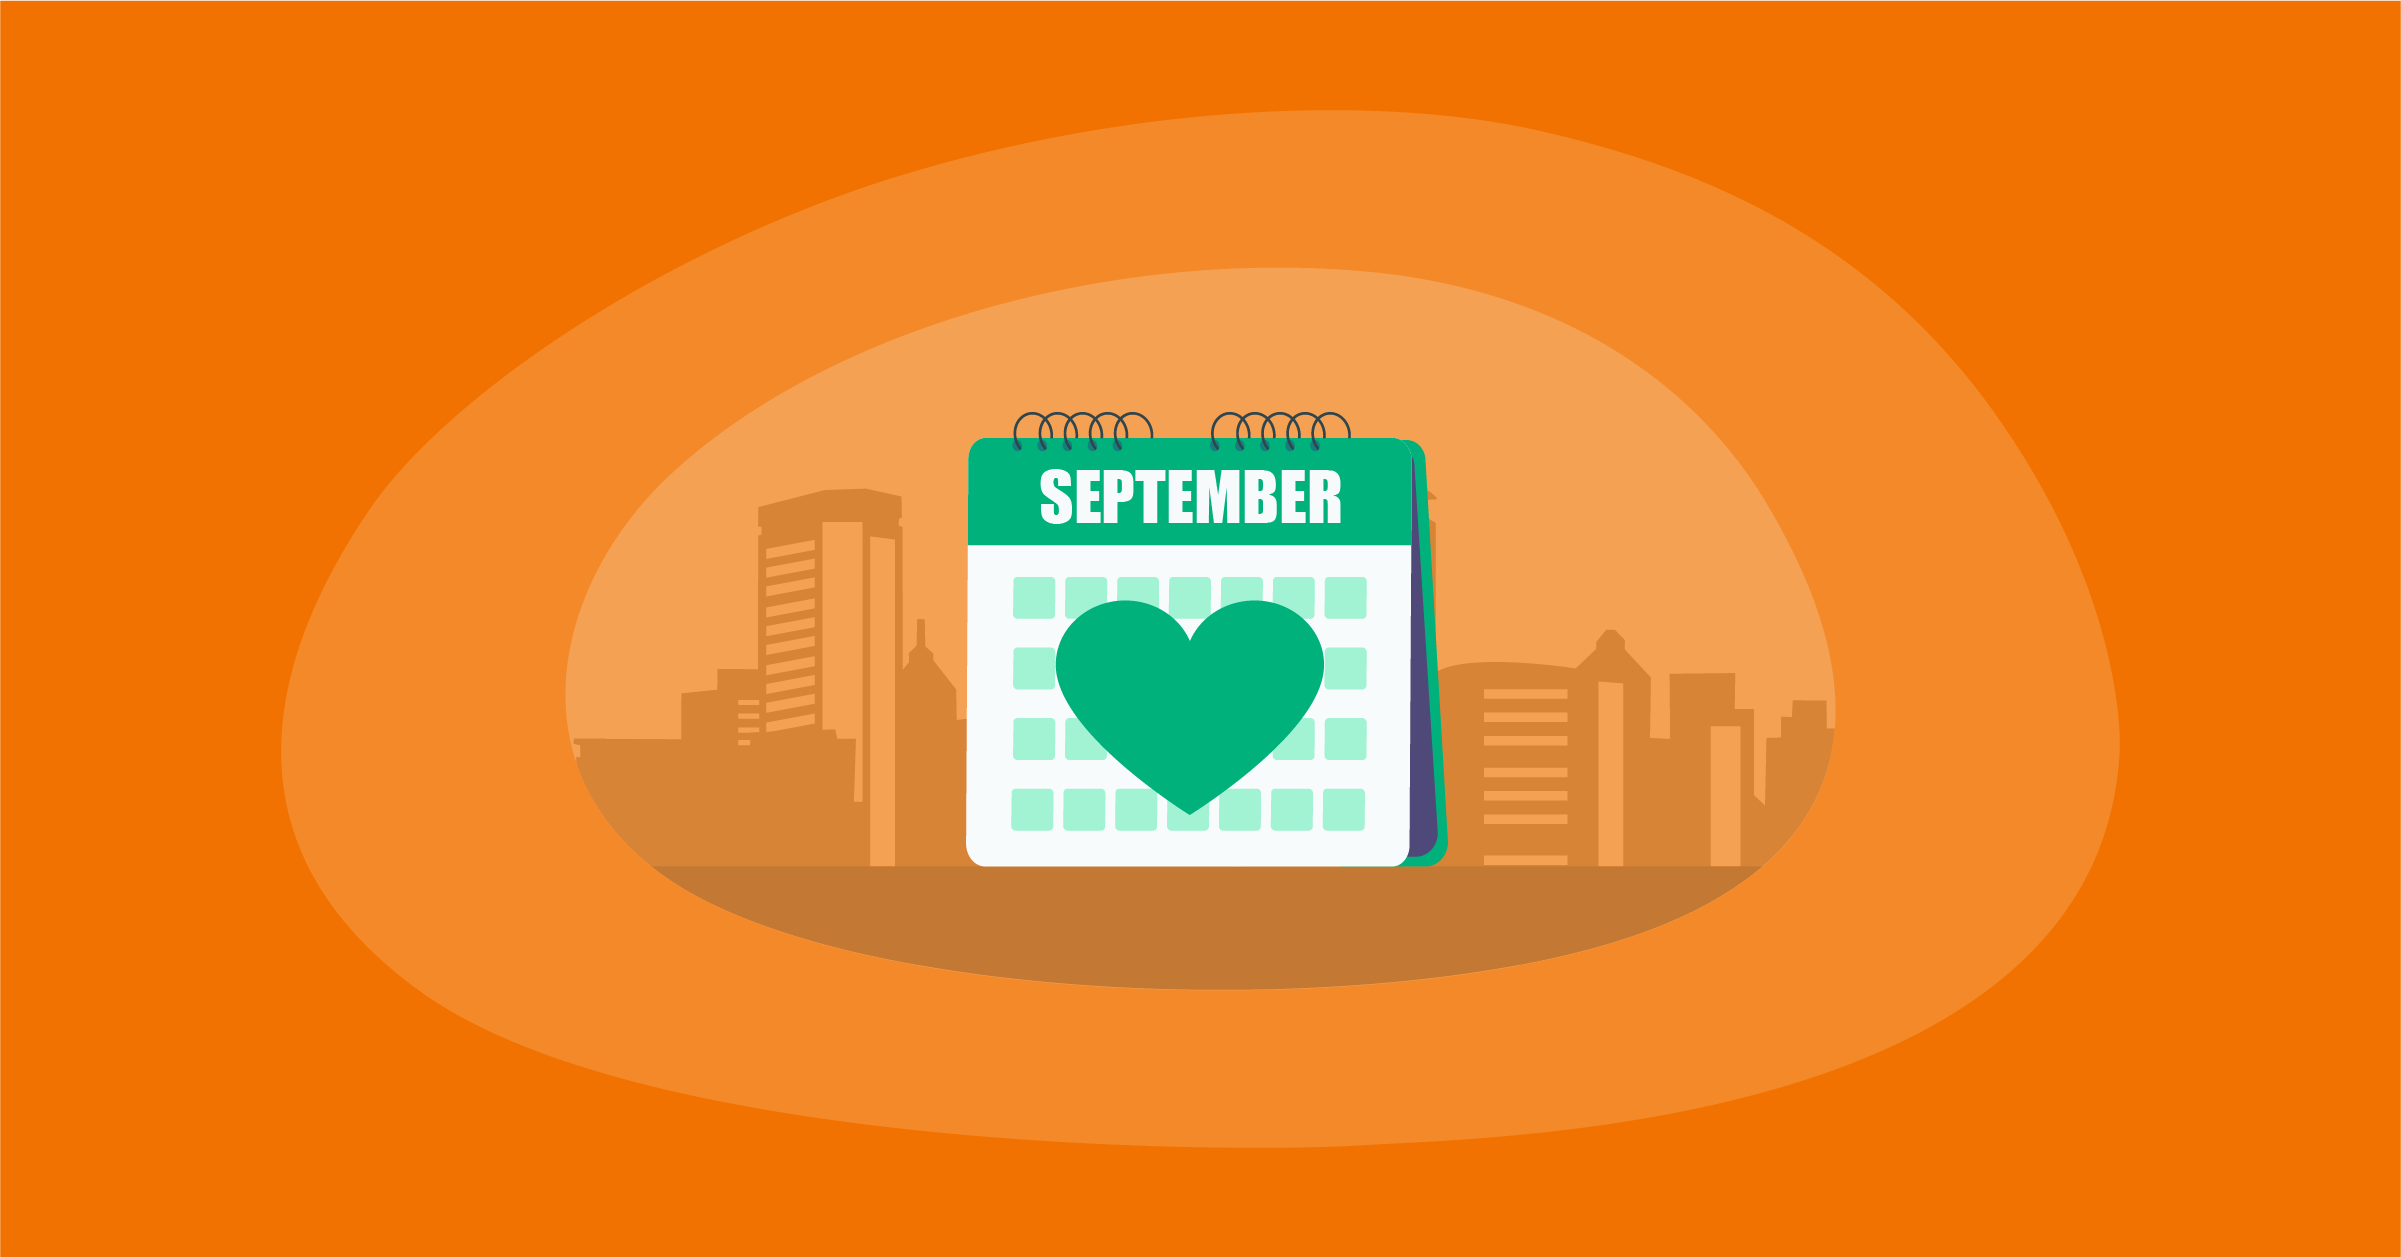 Illustration of an awareness calendar for September